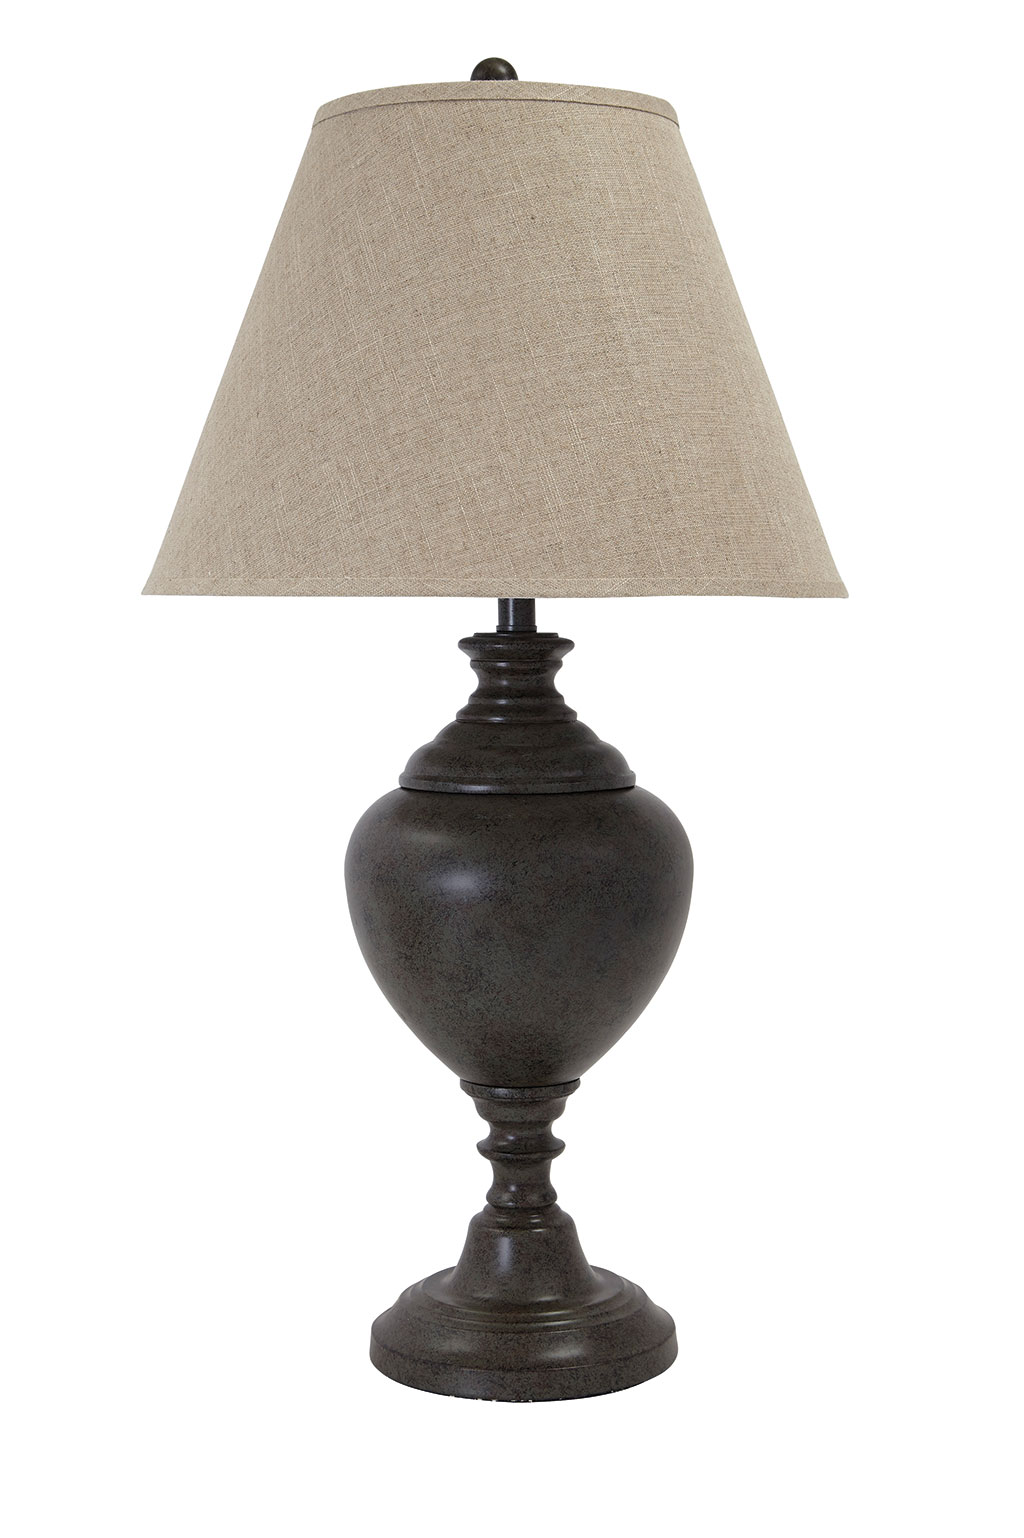 L200074 Table Lamp - Verdigris